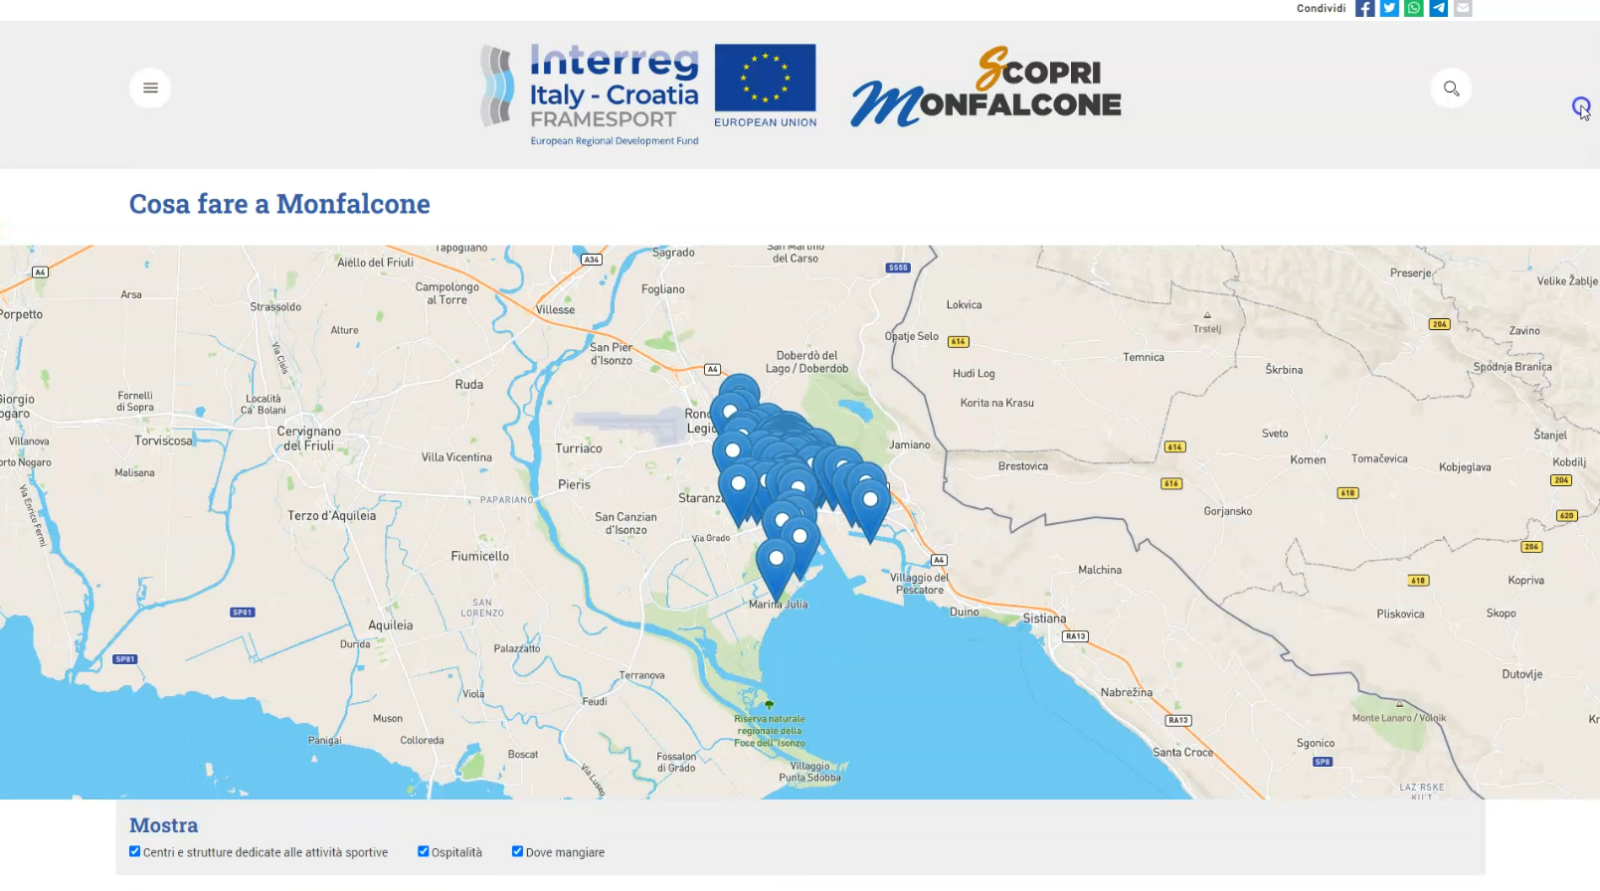 mappa con indicati i luoghi da visitare di monfalcone, interfaccia dell'applicazione web realizzata da ett per monfalcone